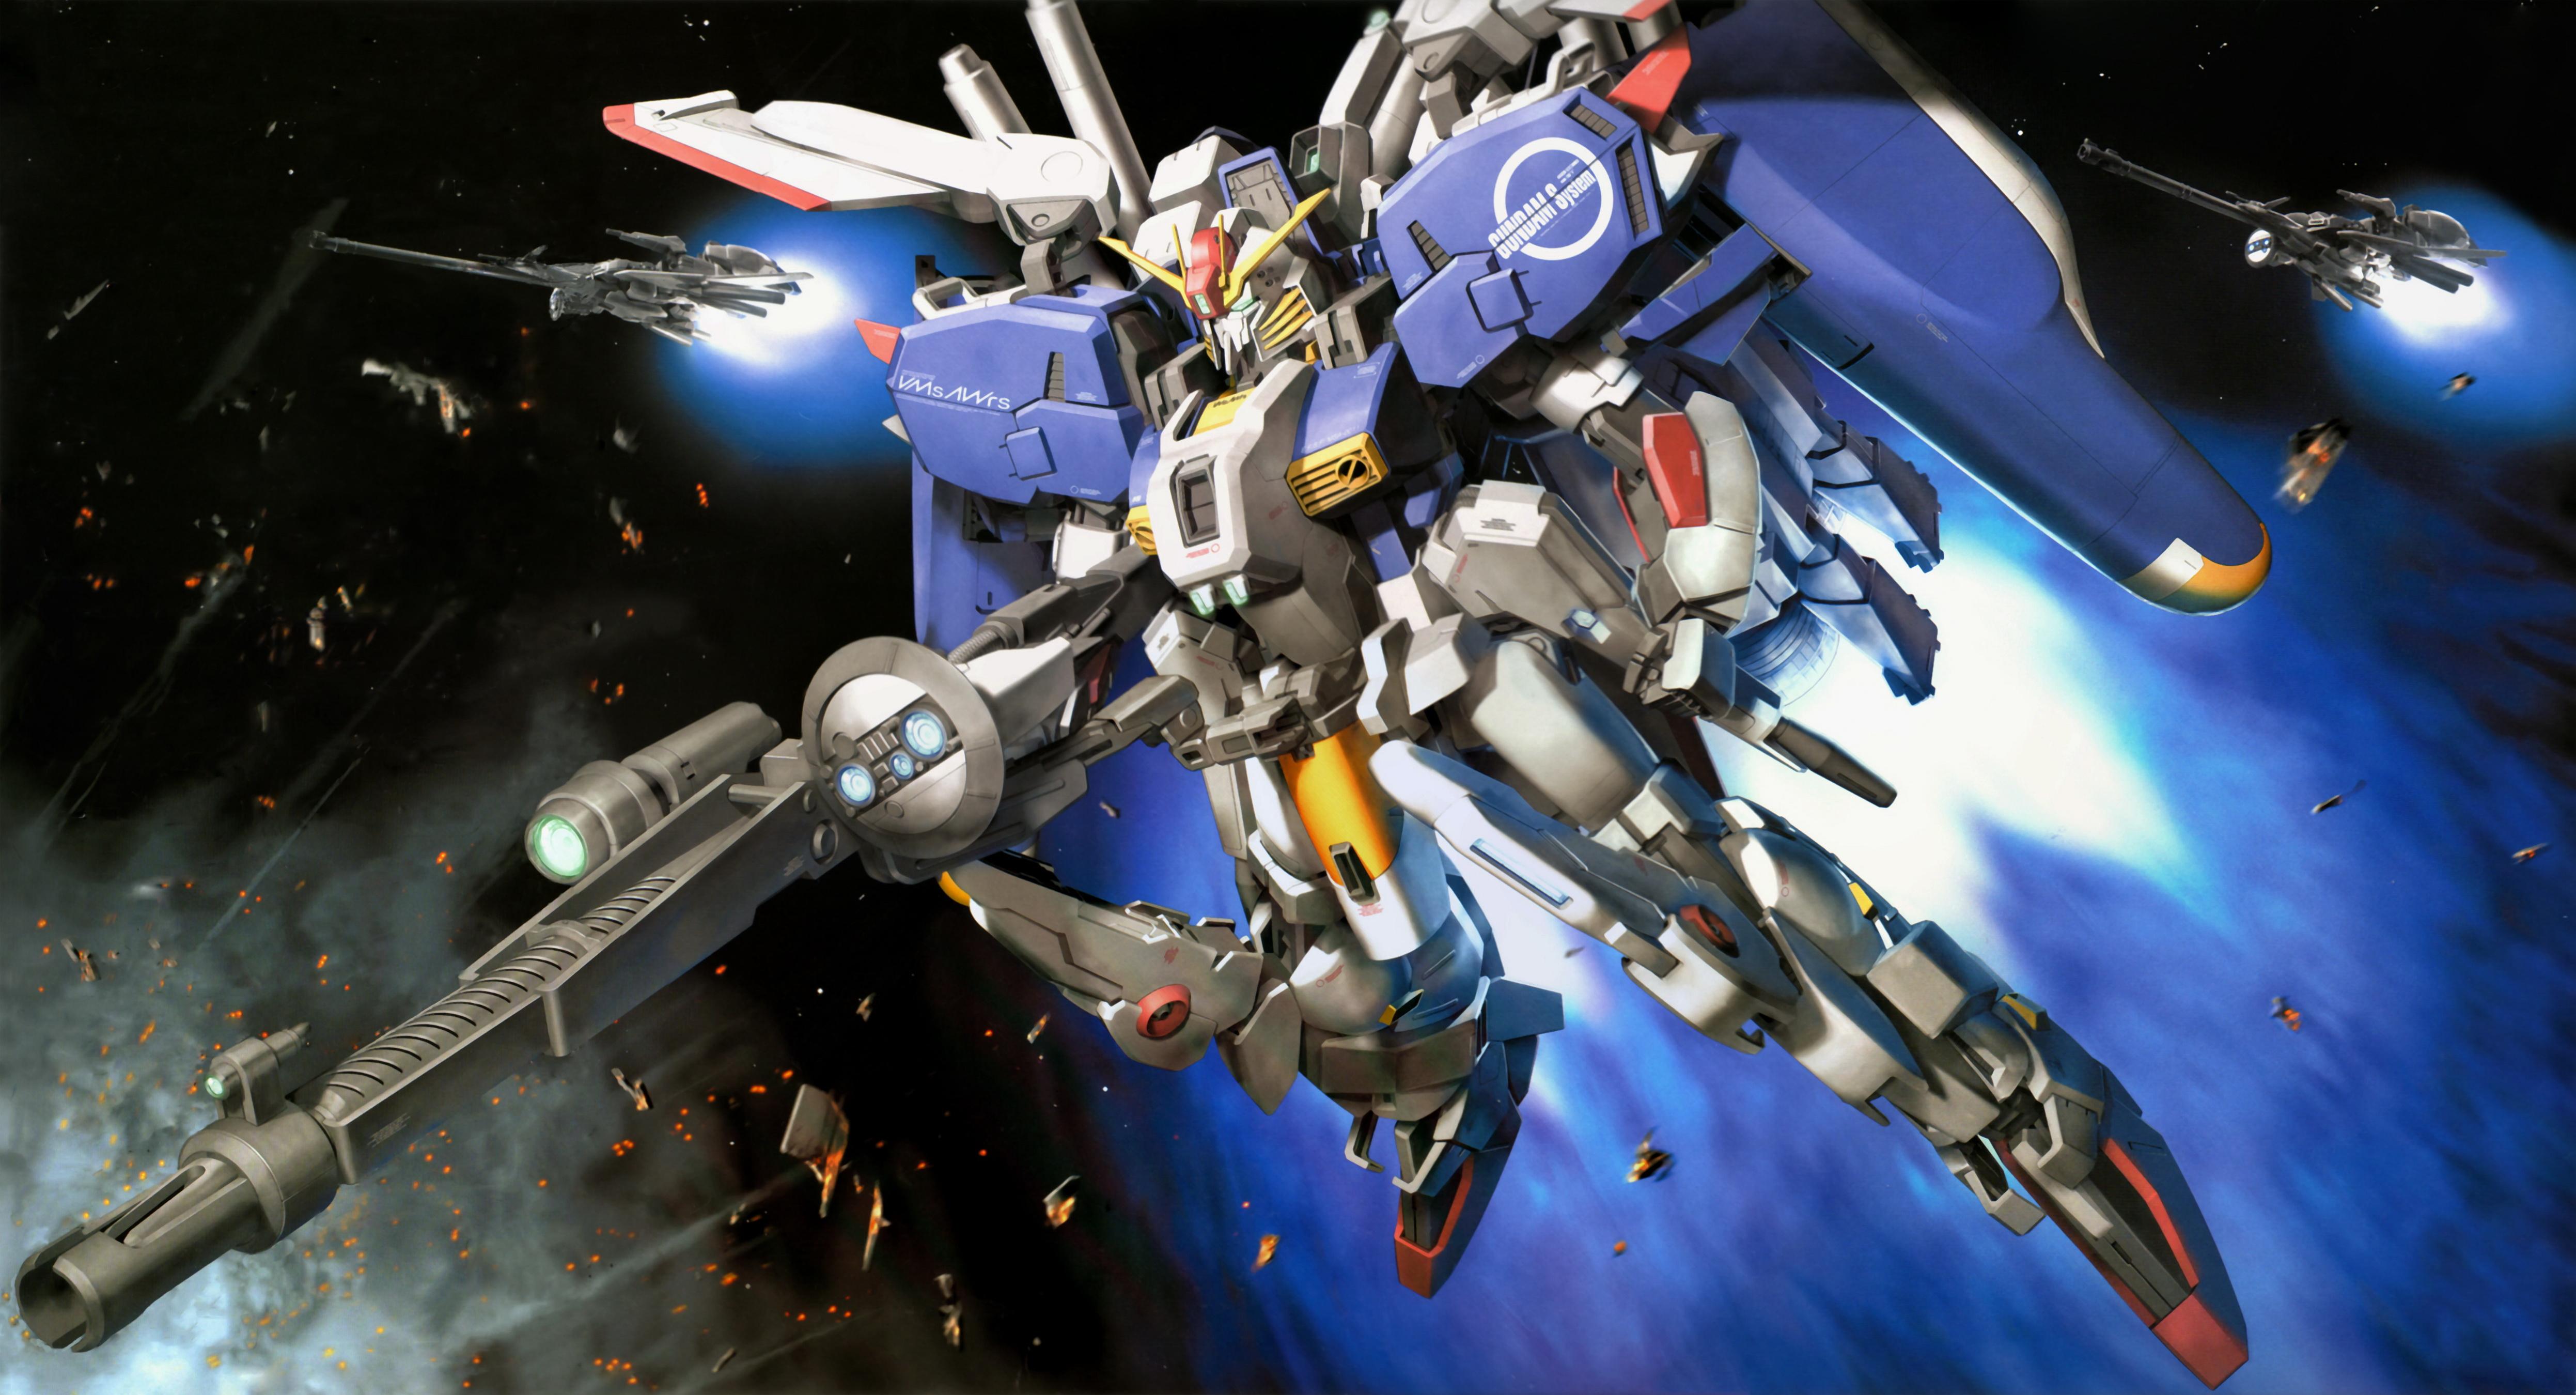 4987 x 2700 · jpeg - Gundam Computer Wallpapers, Desktop Backgrounds | 4987x2700 | ID:226514